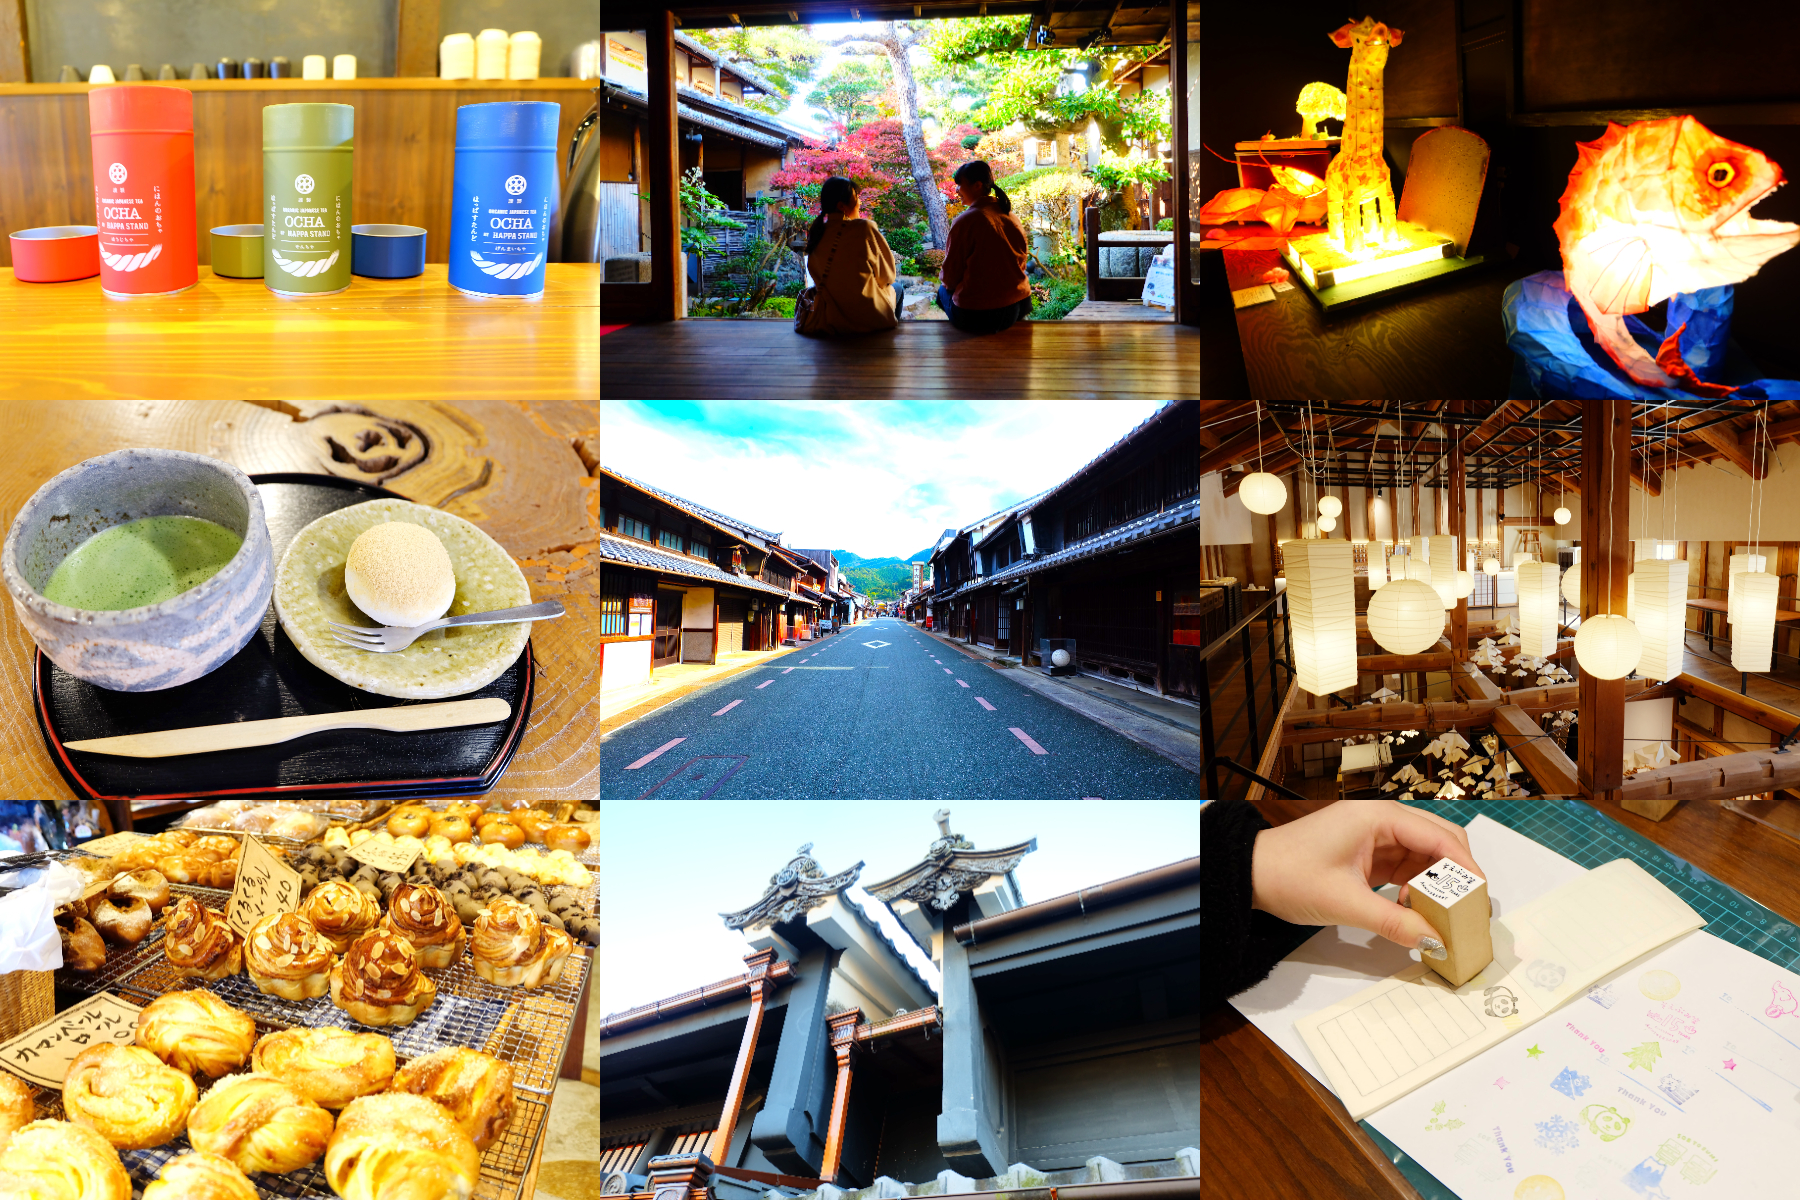 Chuyến đi bộ quanh thành phố Mino, tỉnh Gifu, &quot;Phố Udatsu&quot;! 7 địa điểm được đề xuất